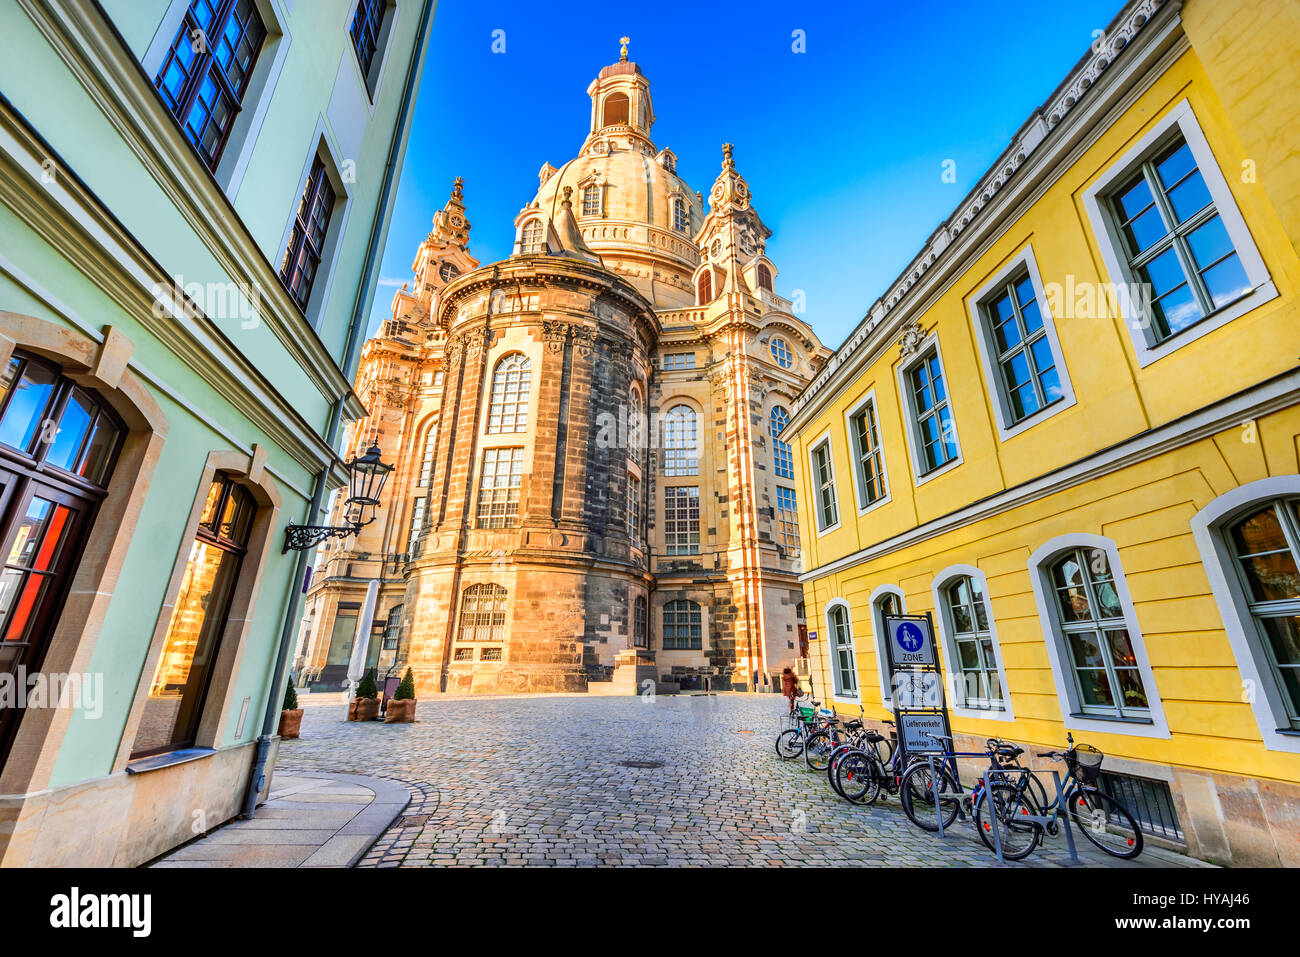 Dresde, Allemagne. La Frauenkirche, dans la ville antique de Dresde, centre historique et culturel de l'Etat libre de Saxe en Europe. Banque D'Images